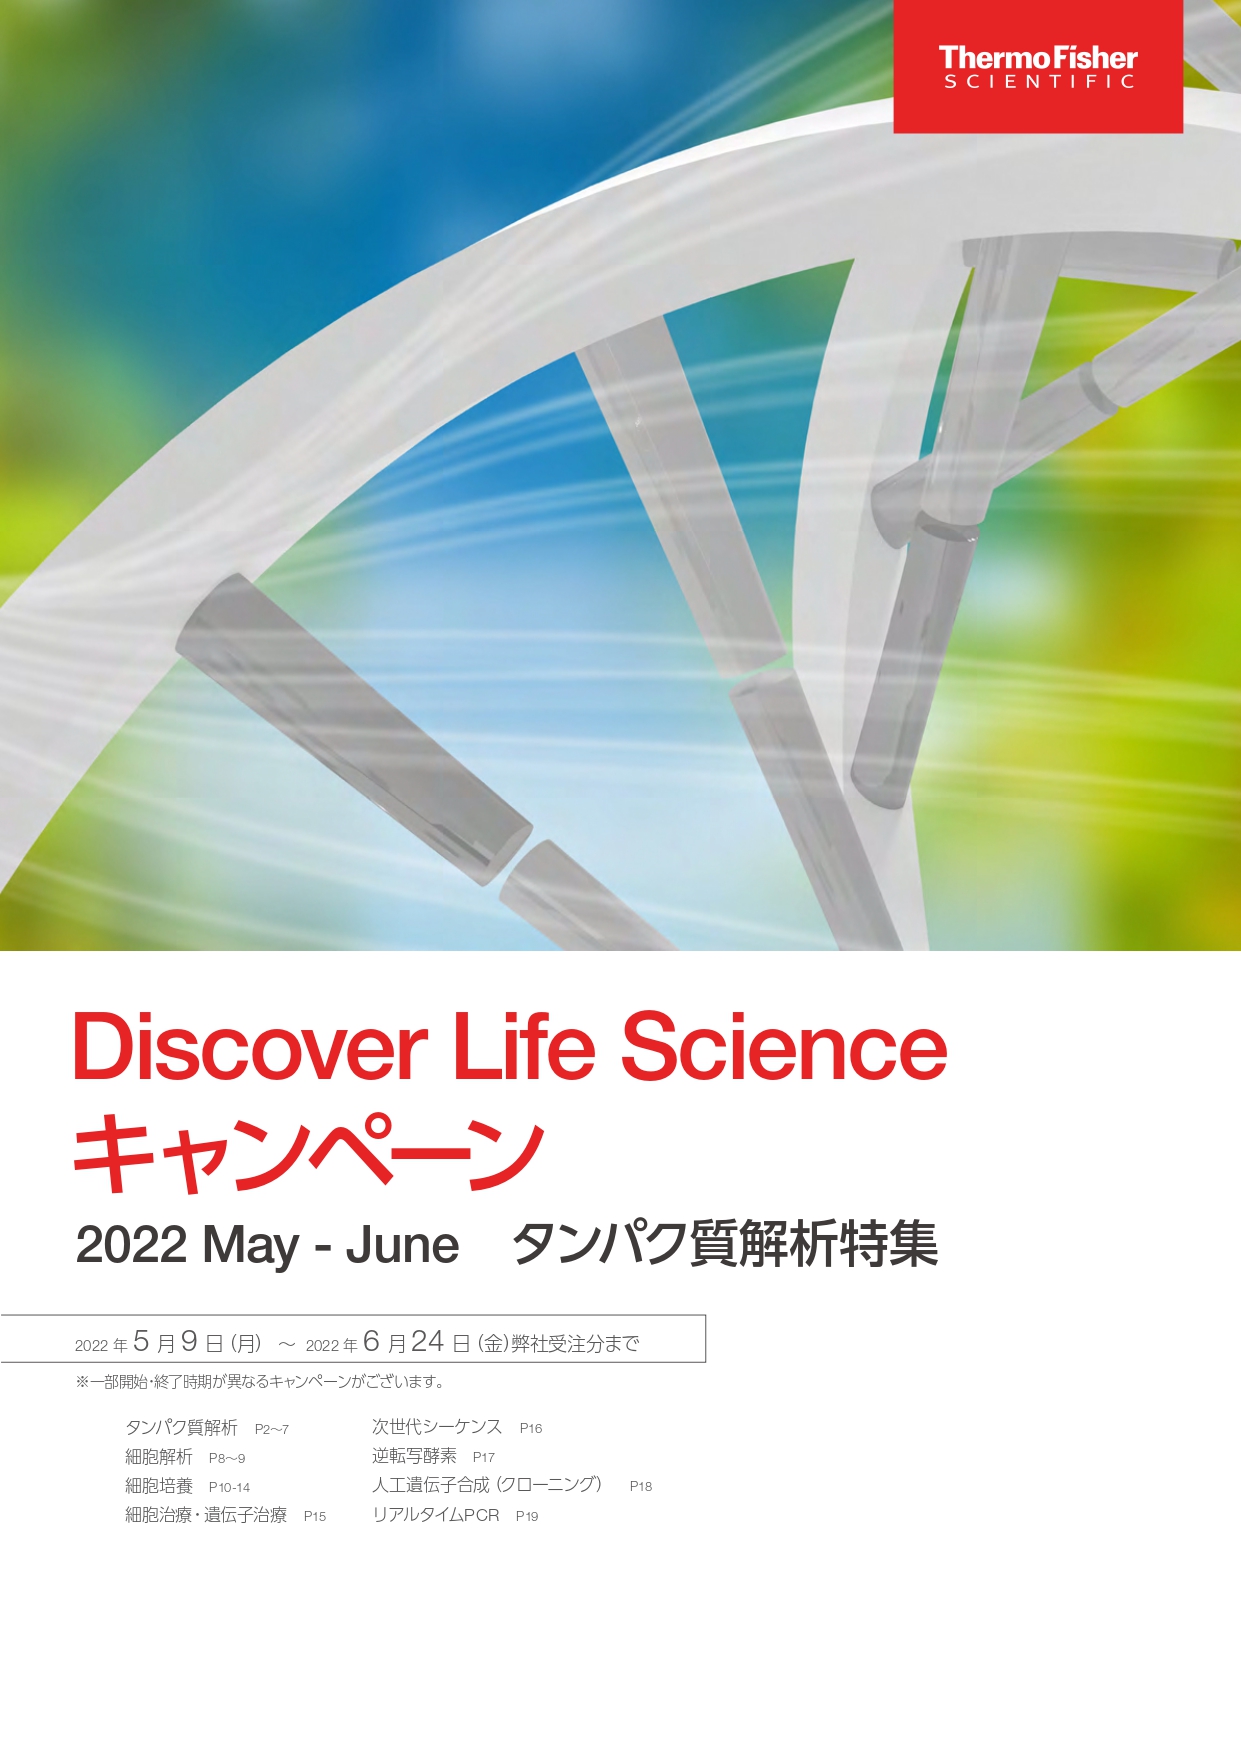 サーモフィッシャー　Discover Life Scienceキャンペーン 2022 May - June タンパク質解析特集